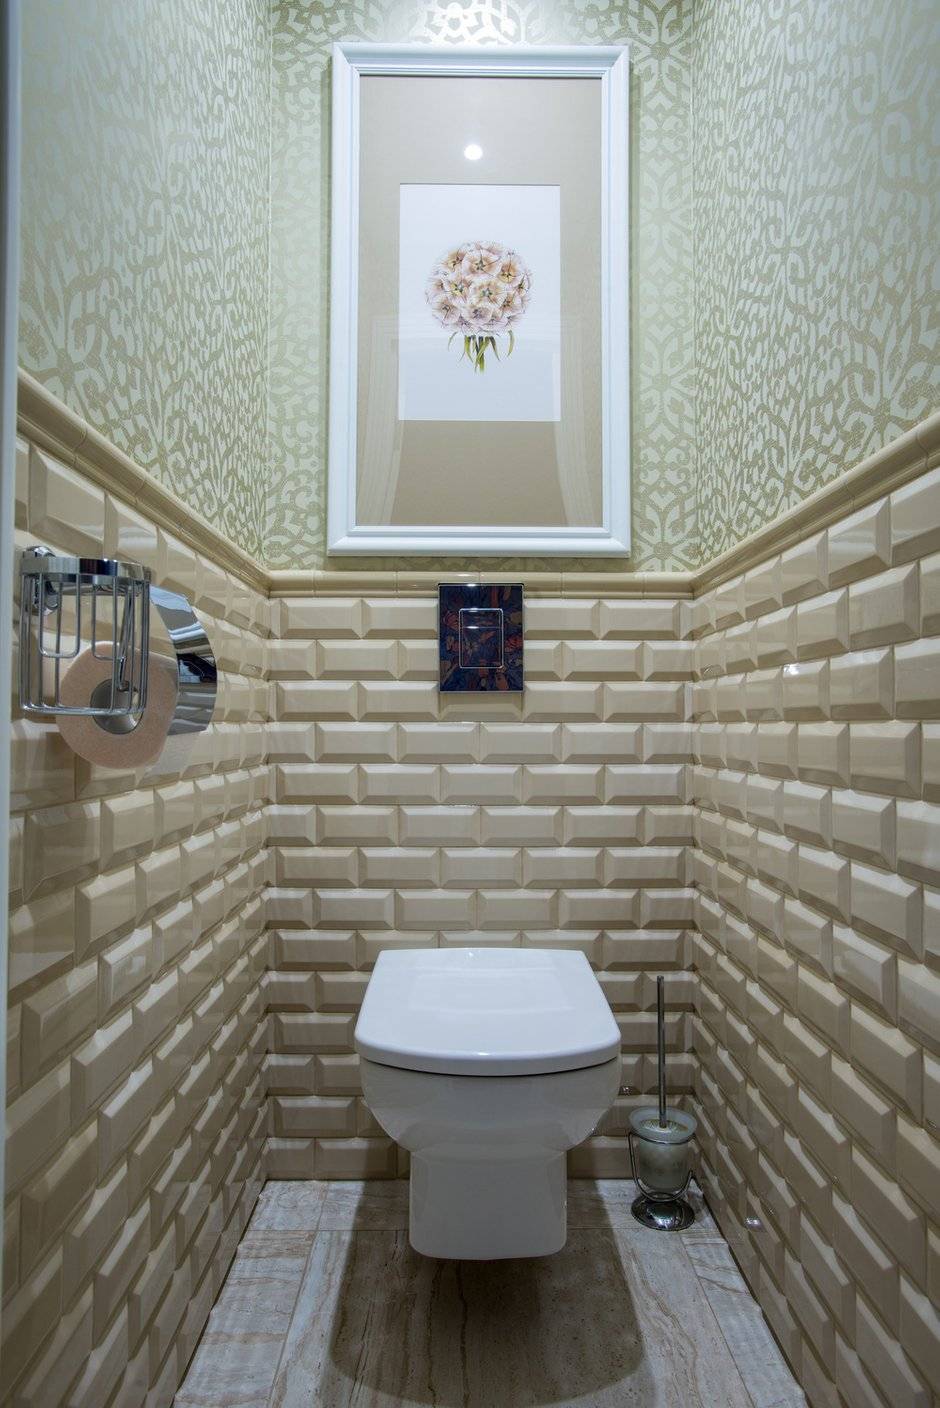 Чем можно отделать стены в туалете кроме кафельной плитки?